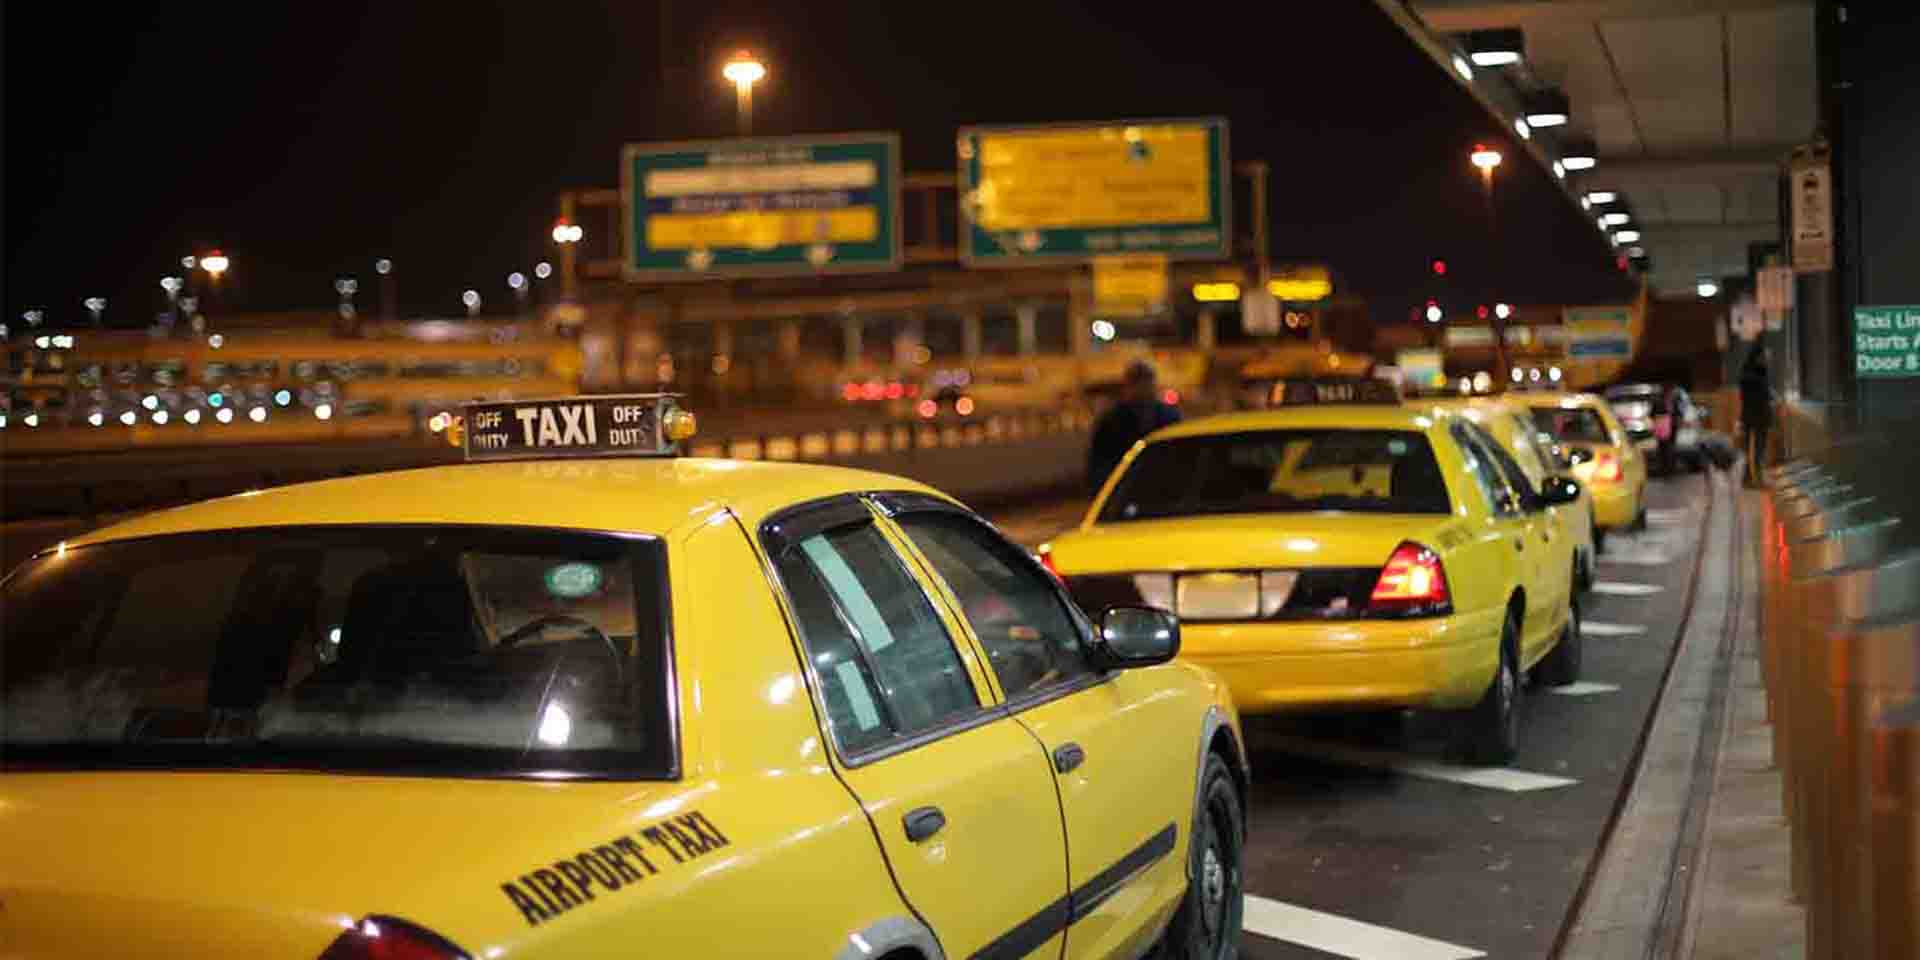 В такси после клуба. Таксисты в аэропорту. Аэропортовое такси. Трансфер такси. Ночной такси.